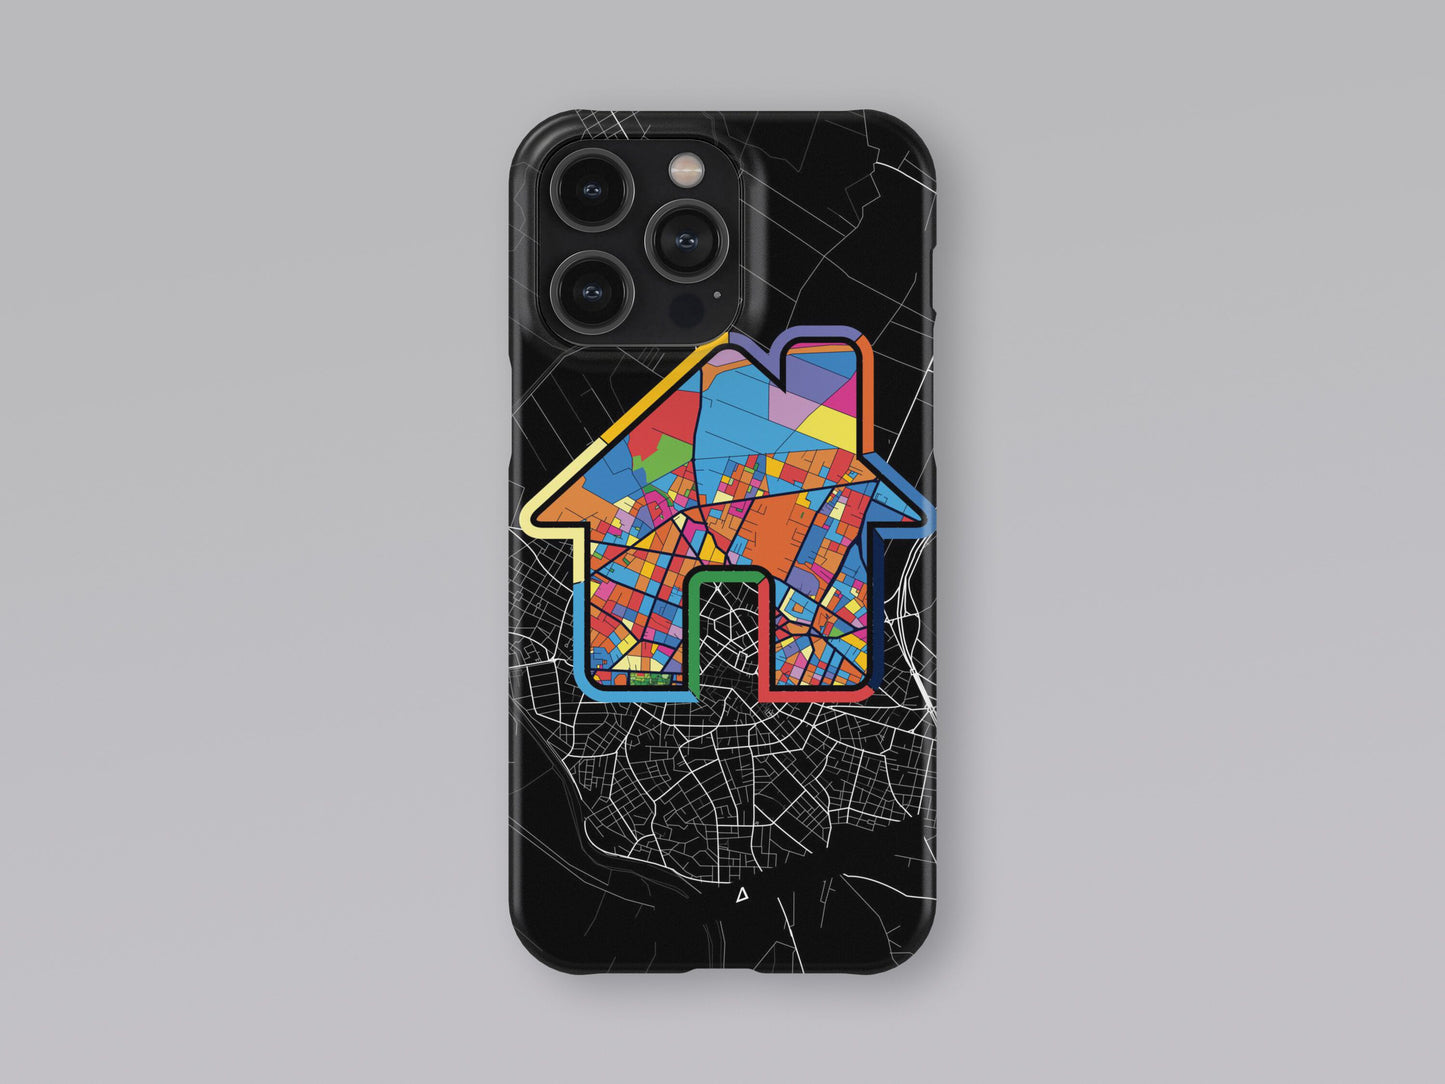 Κατερινη Ελλαδα slim phone case with colorful icon 3